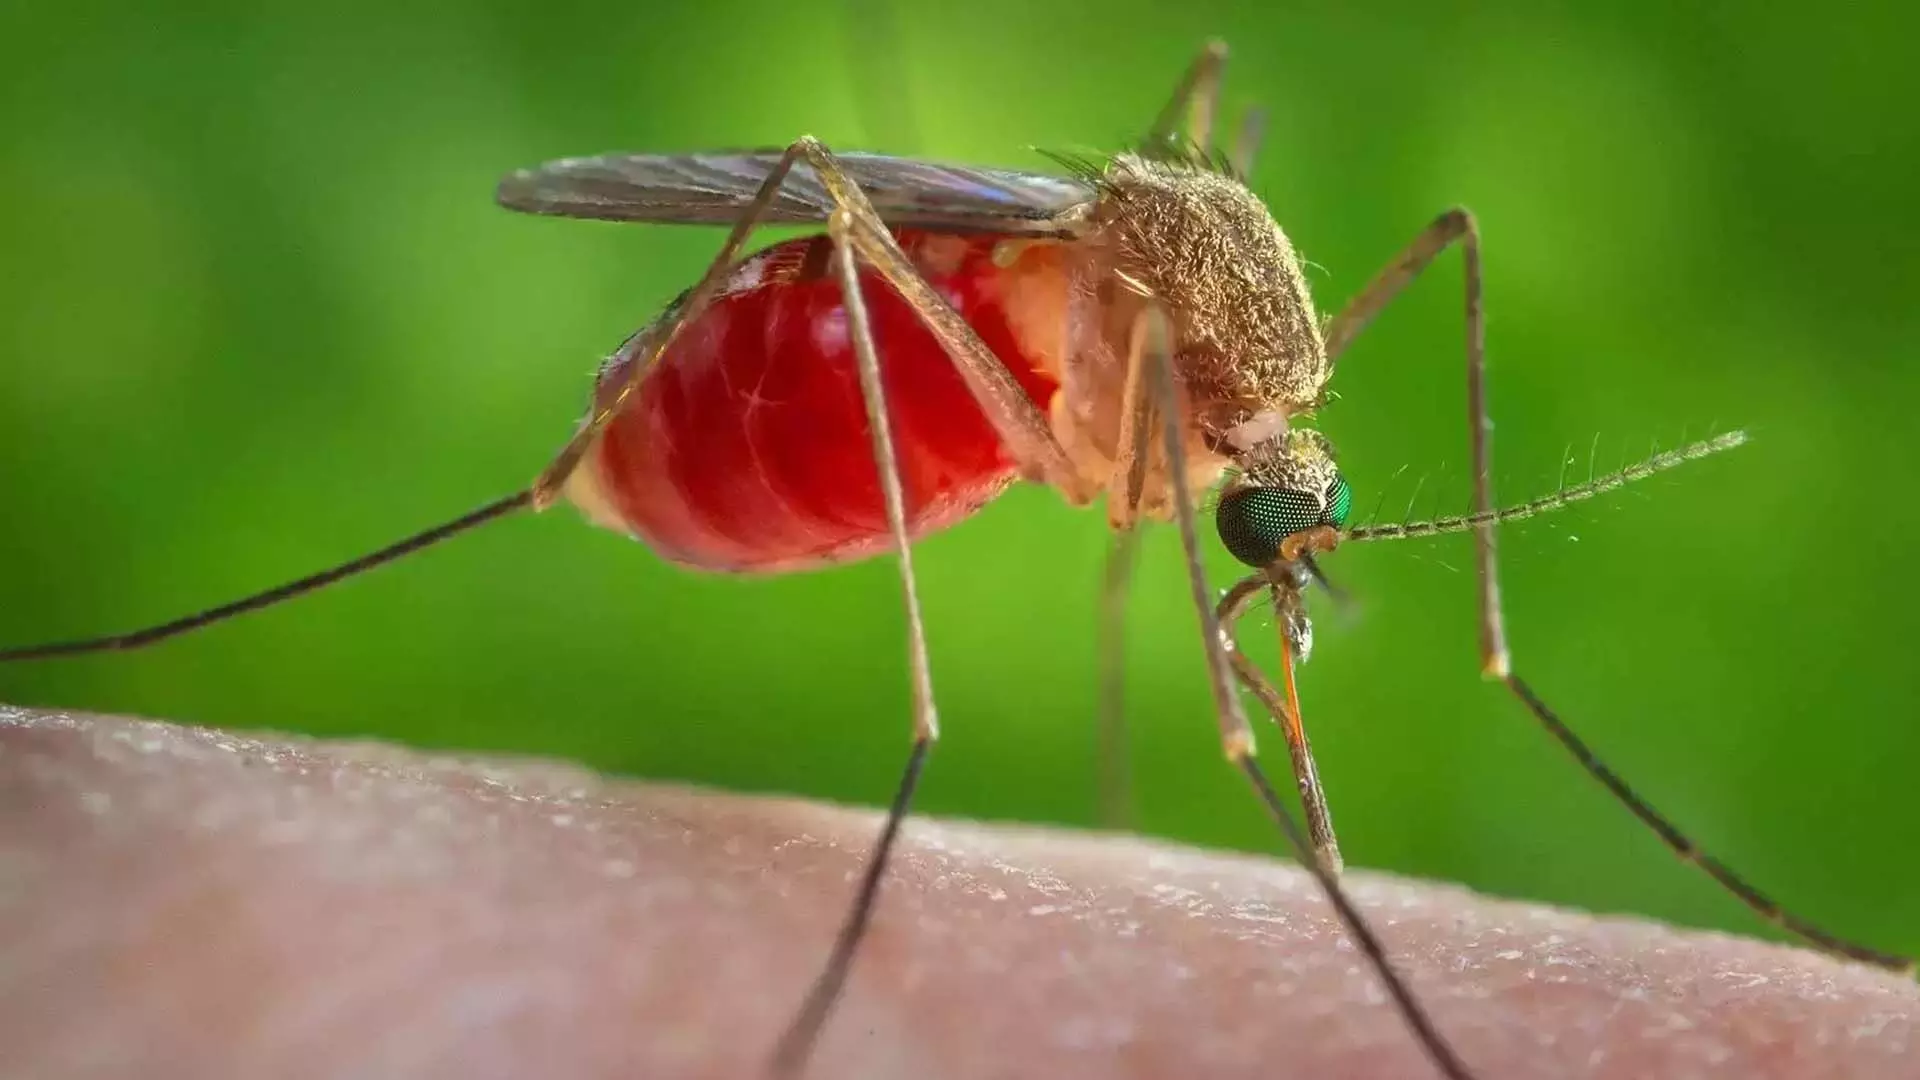 Home trips: मच्छर निरोधकों में होता है भारी केमिकल,बचने के लिए अपनाए घरेलू उपाए